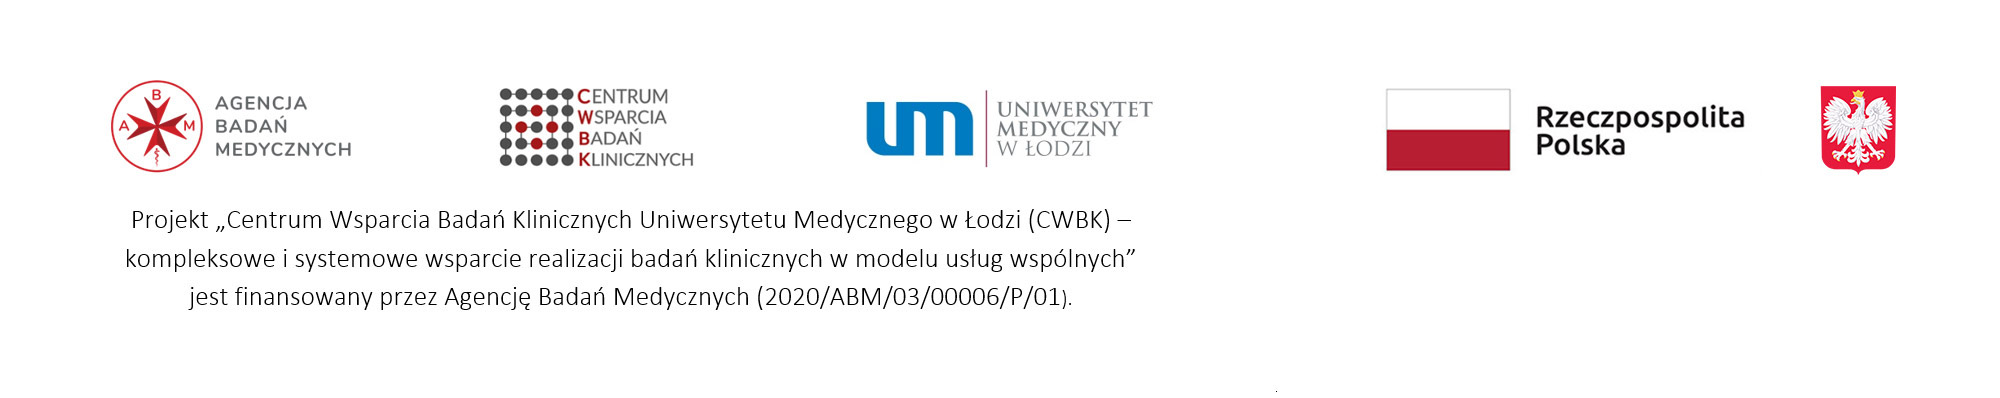 Logotypy projektu - Centrum Wsparcia Badań Klinicznych Uniwersytetu Medycznego w Łodzi (CWBK) – kompleksowe i systemowe wsparcie realizacji badań klinicznych w modelu usług wspólnych